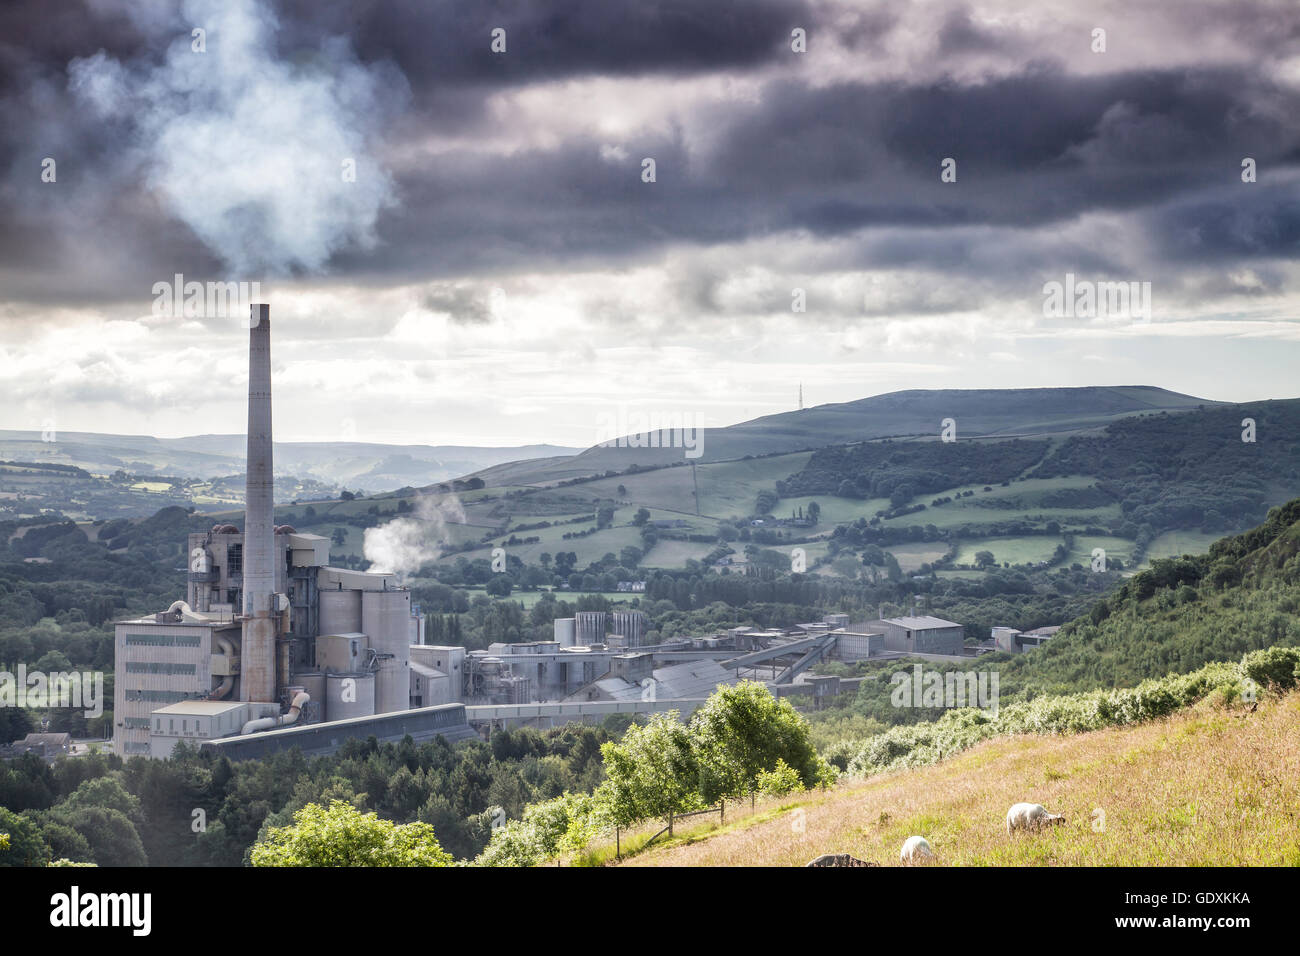 Cimenterie Lafarge,espère Valley, parc national de Peak District Derbyshire Smokey Cheminée en moody ciel nuageux. Campagne vallonnée Banque D'Images